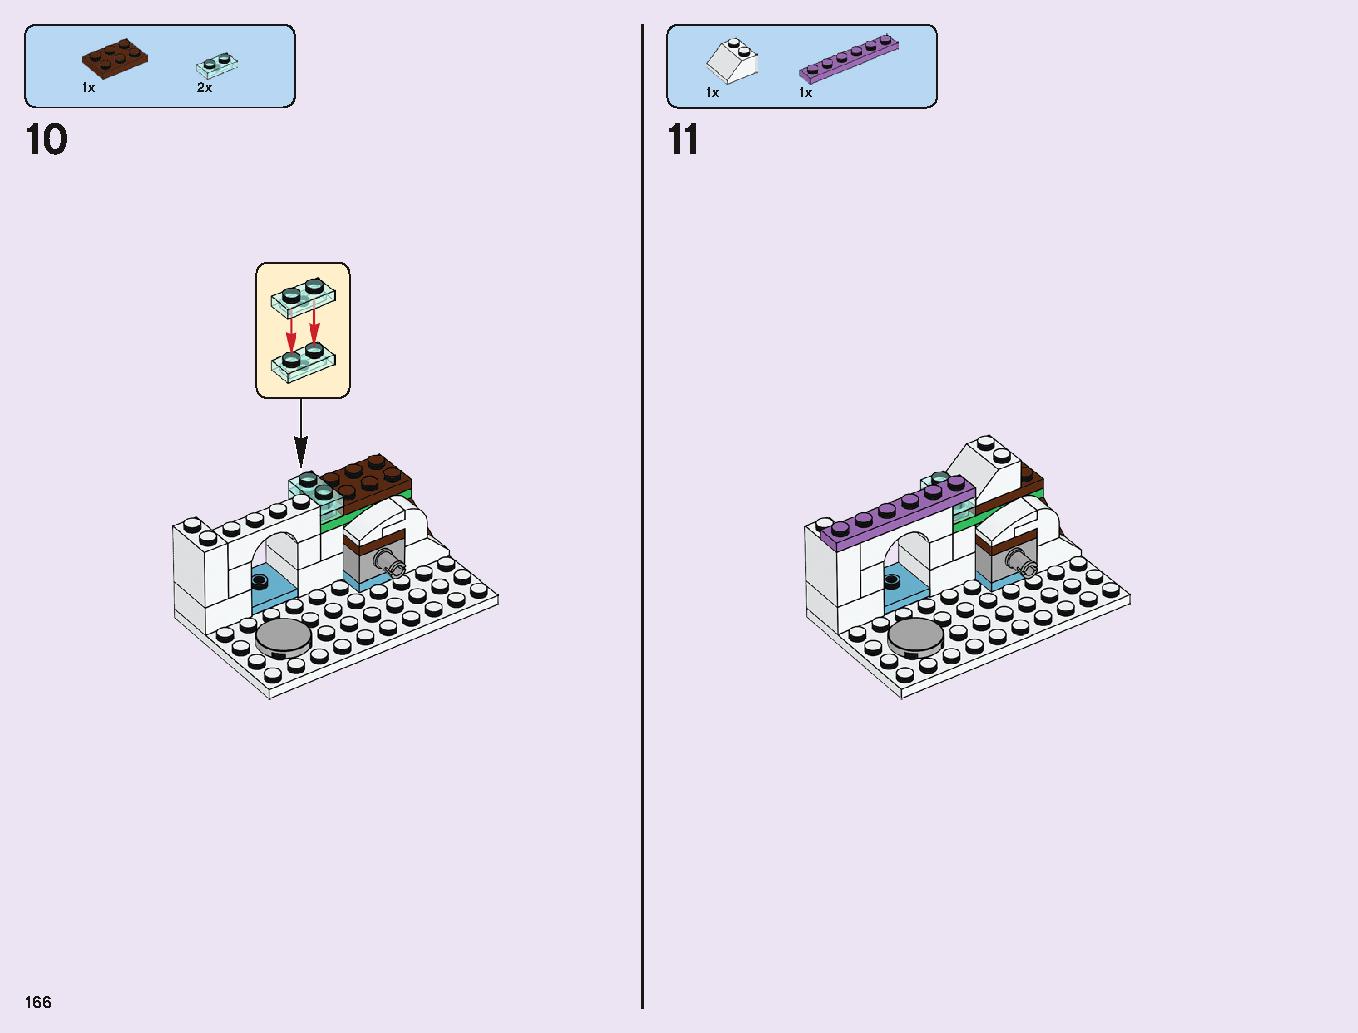 アナと雪の女王 “アイスキャッスル・ファンタジー” 43172 レゴの商品情報 レゴの説明書・組立方法 166 page